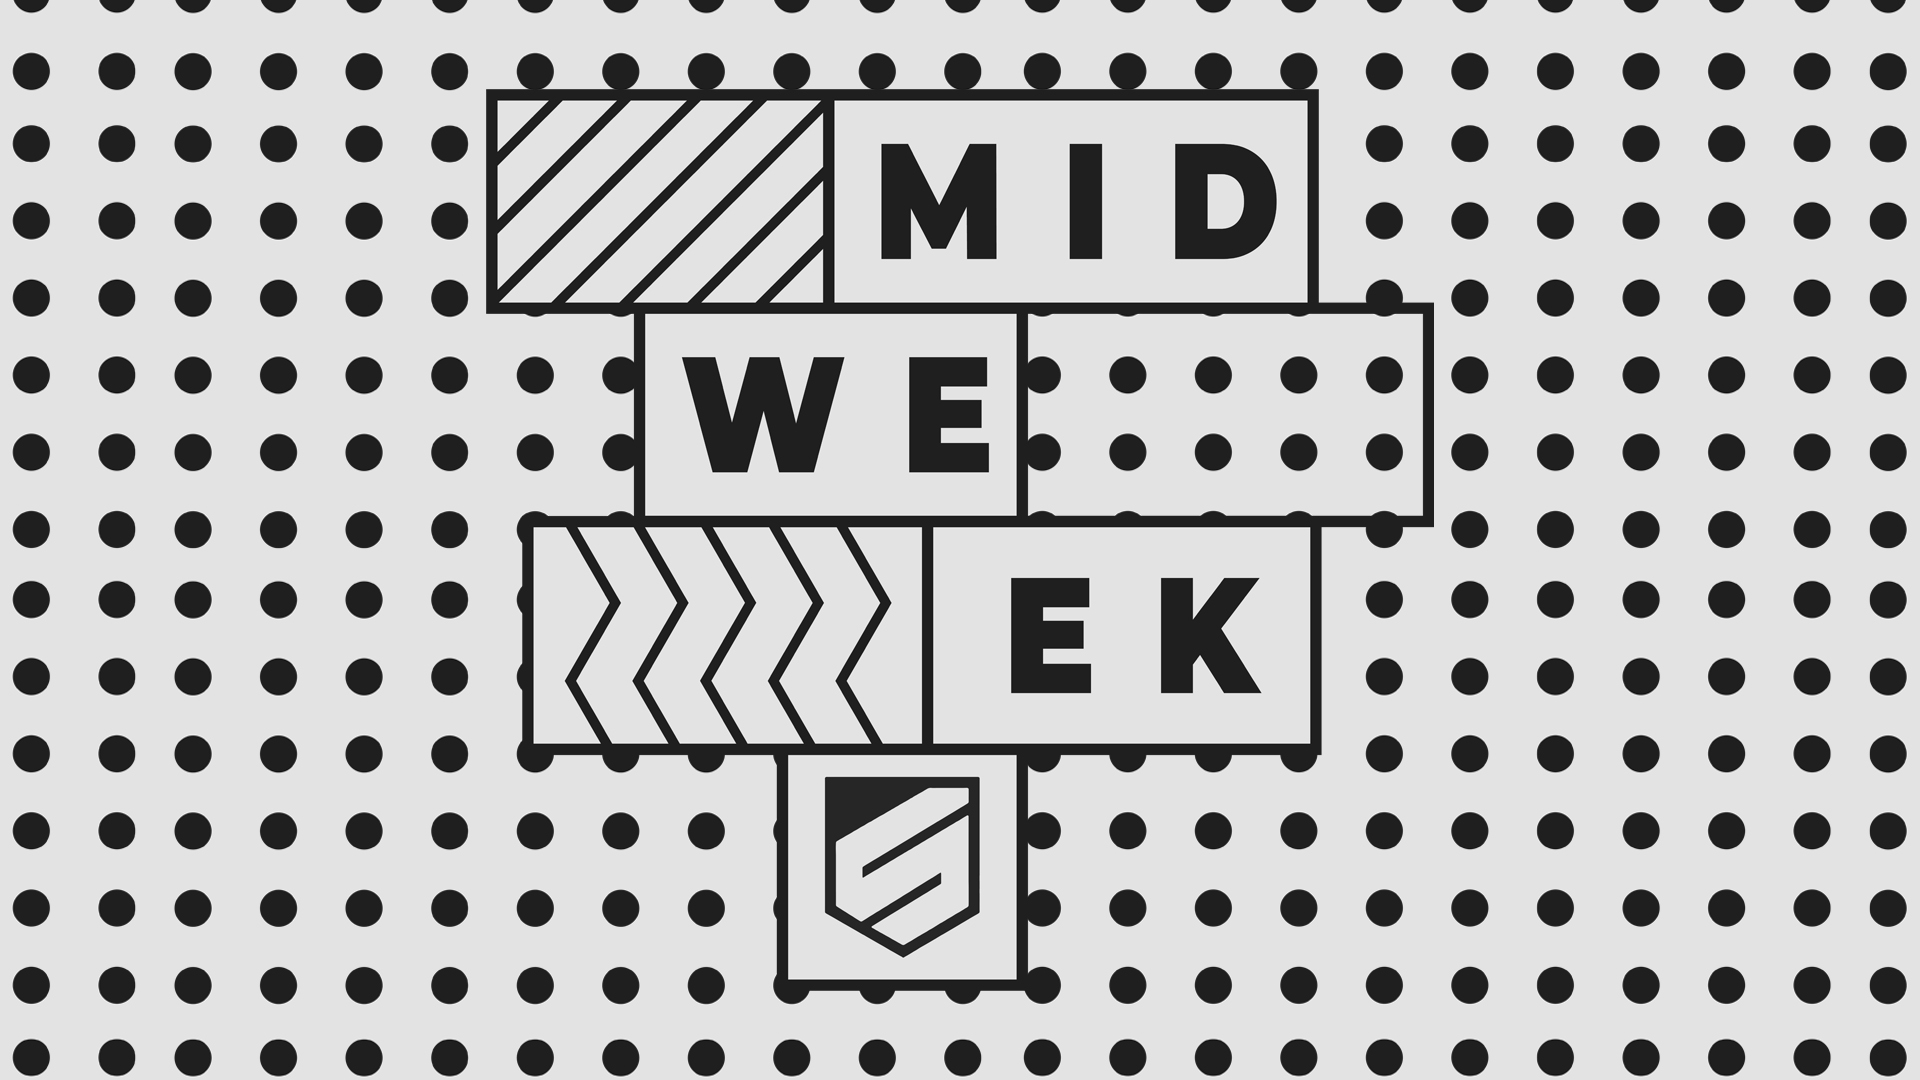 midweek_pregame no date image